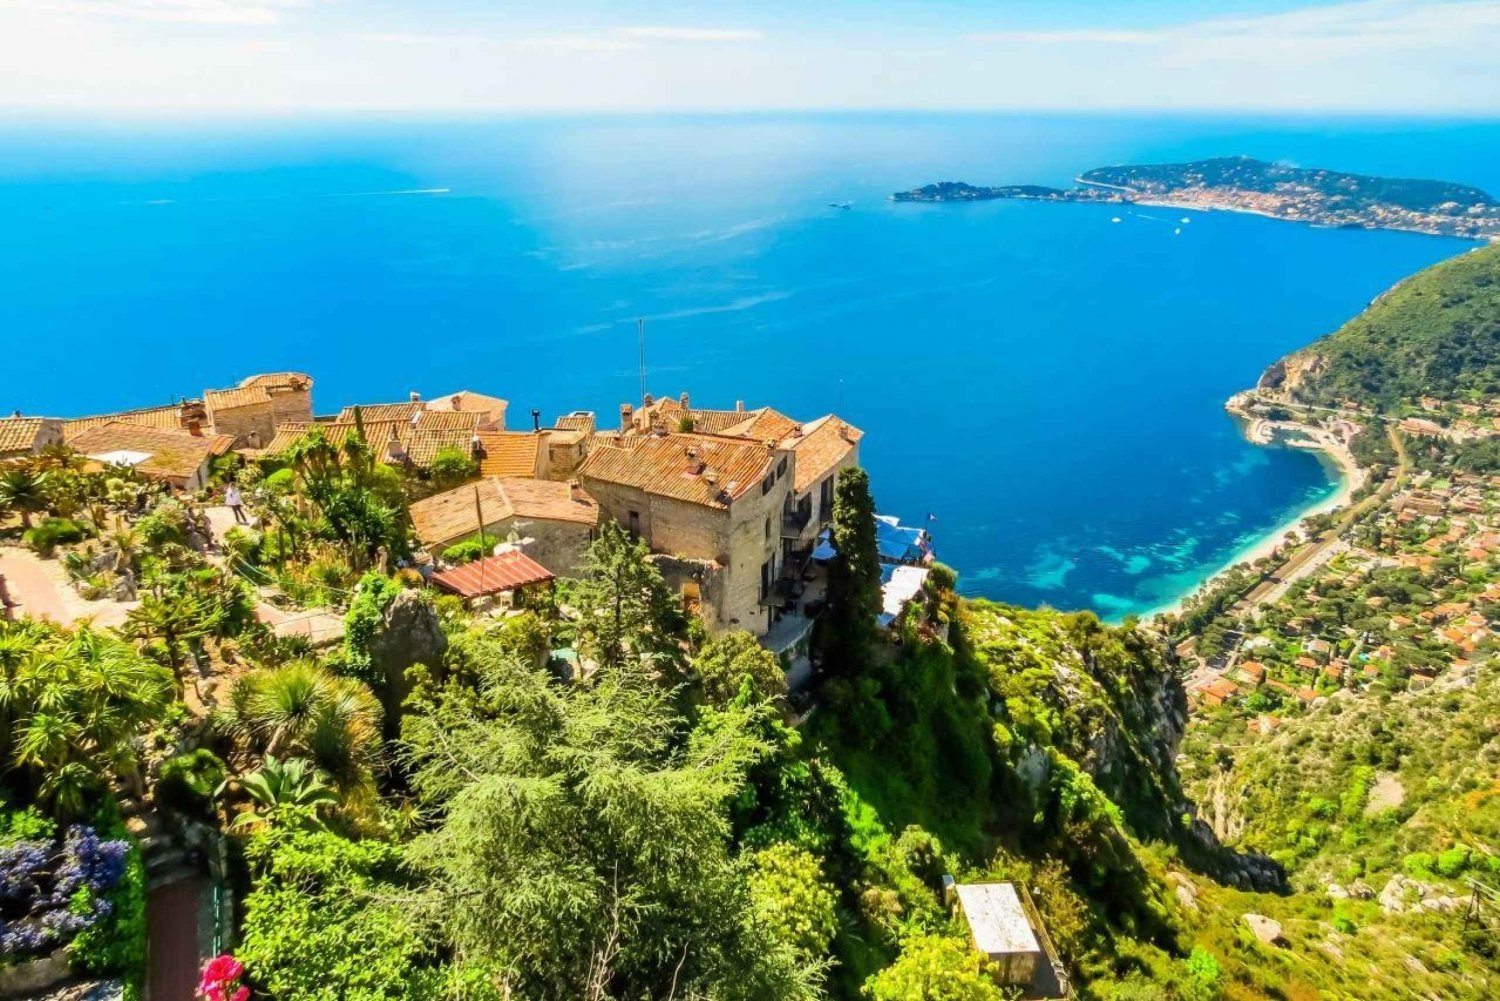 Seacoast View & Monaco - Monte Carlo kokopäiväretki Yksityinen retki